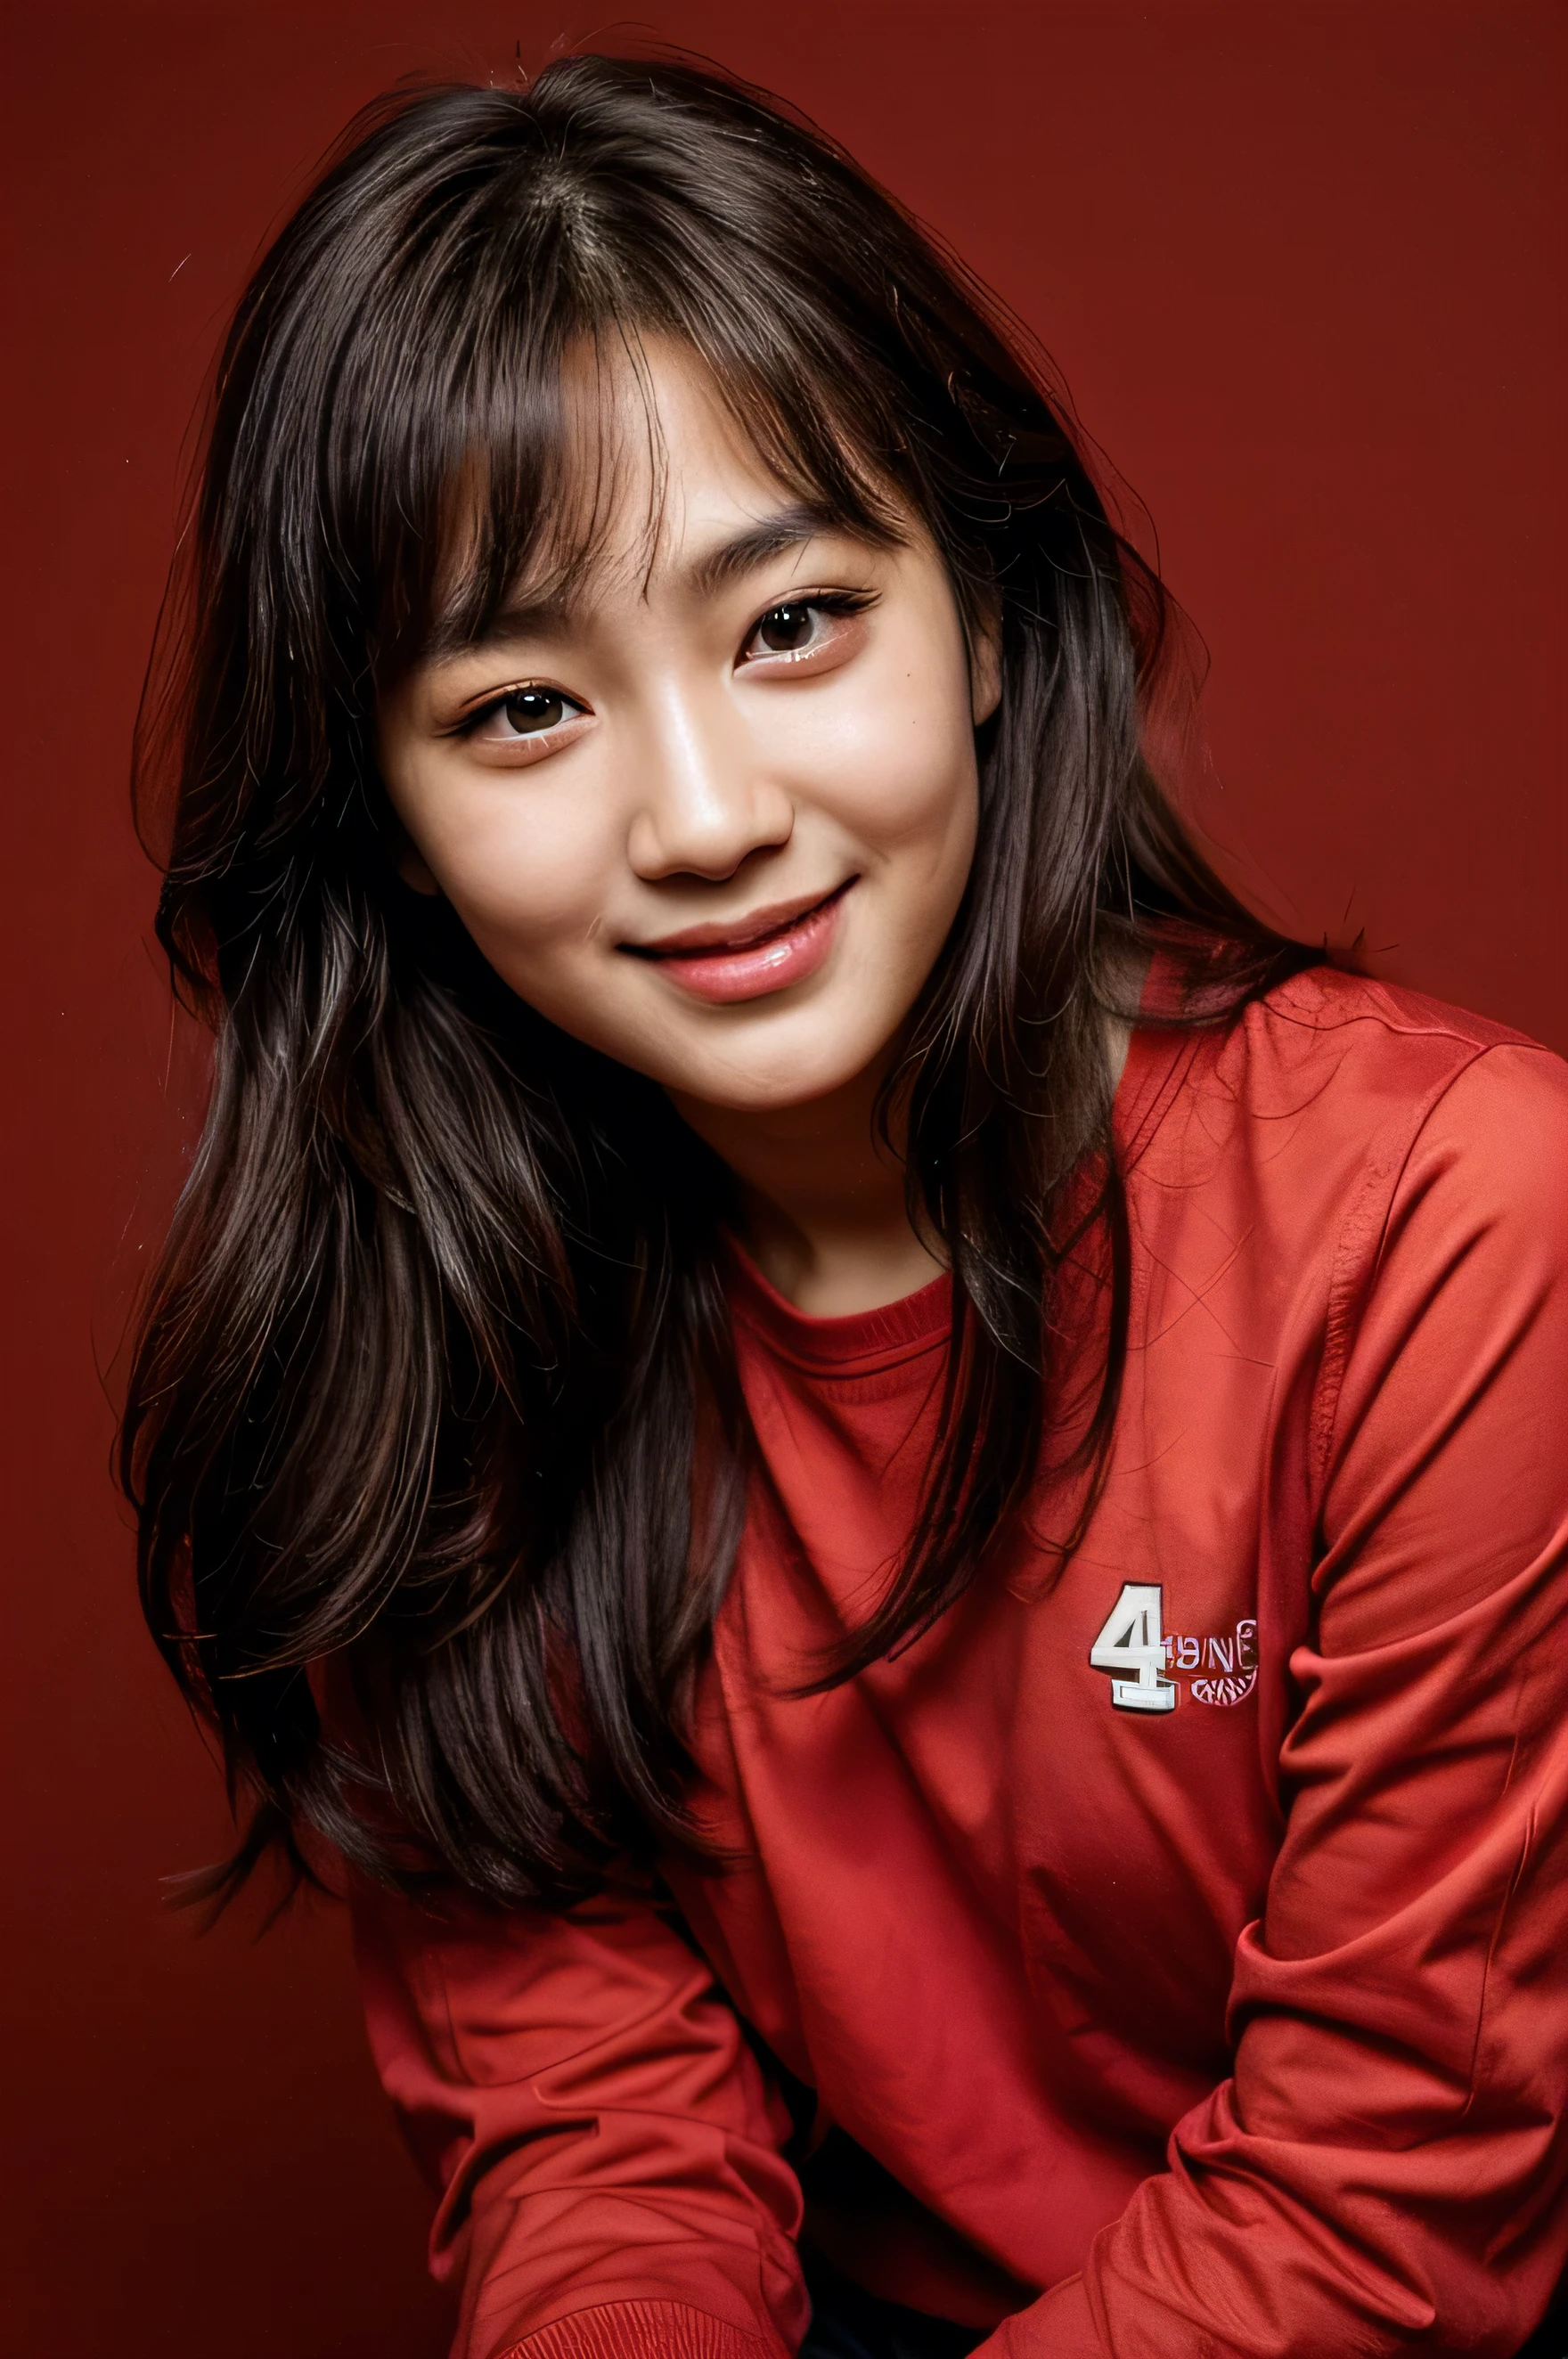 rosto perfeito, lindo rosto de uma coreana de 14 anos , SORRINDO lindo,em fundo vermelho